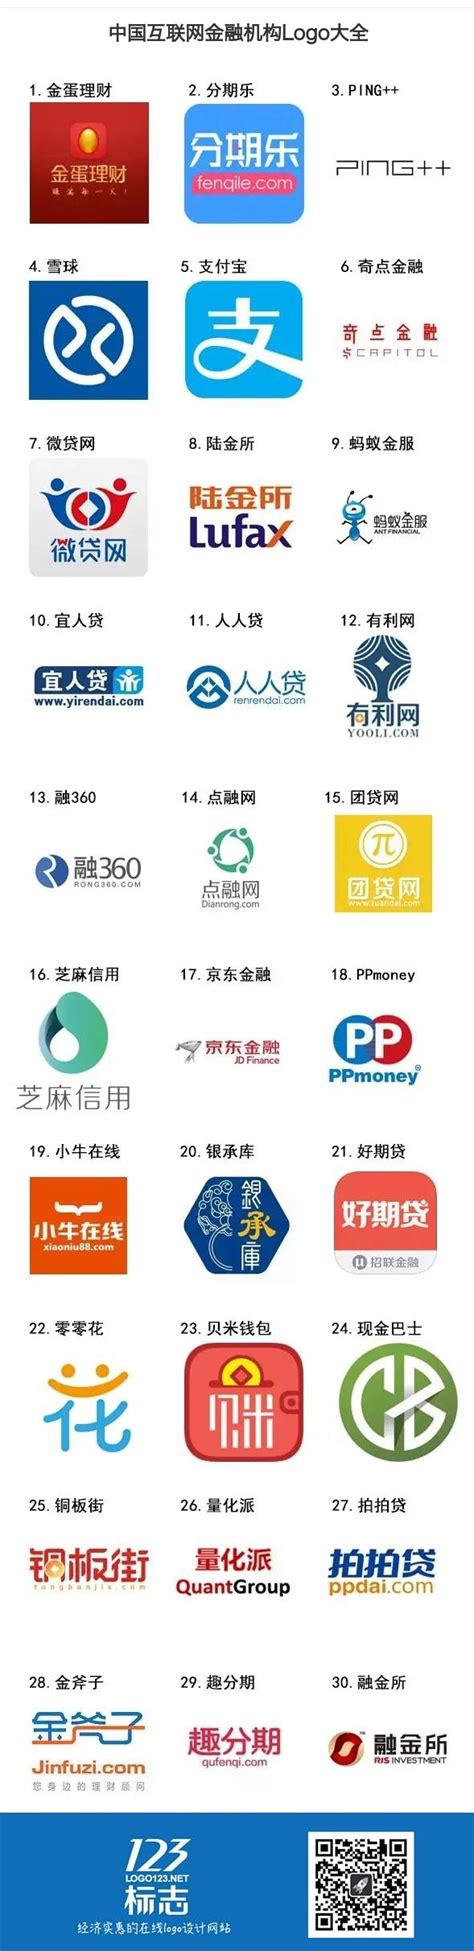 中国互联网金融机构logo大全 | 123标志设计博客